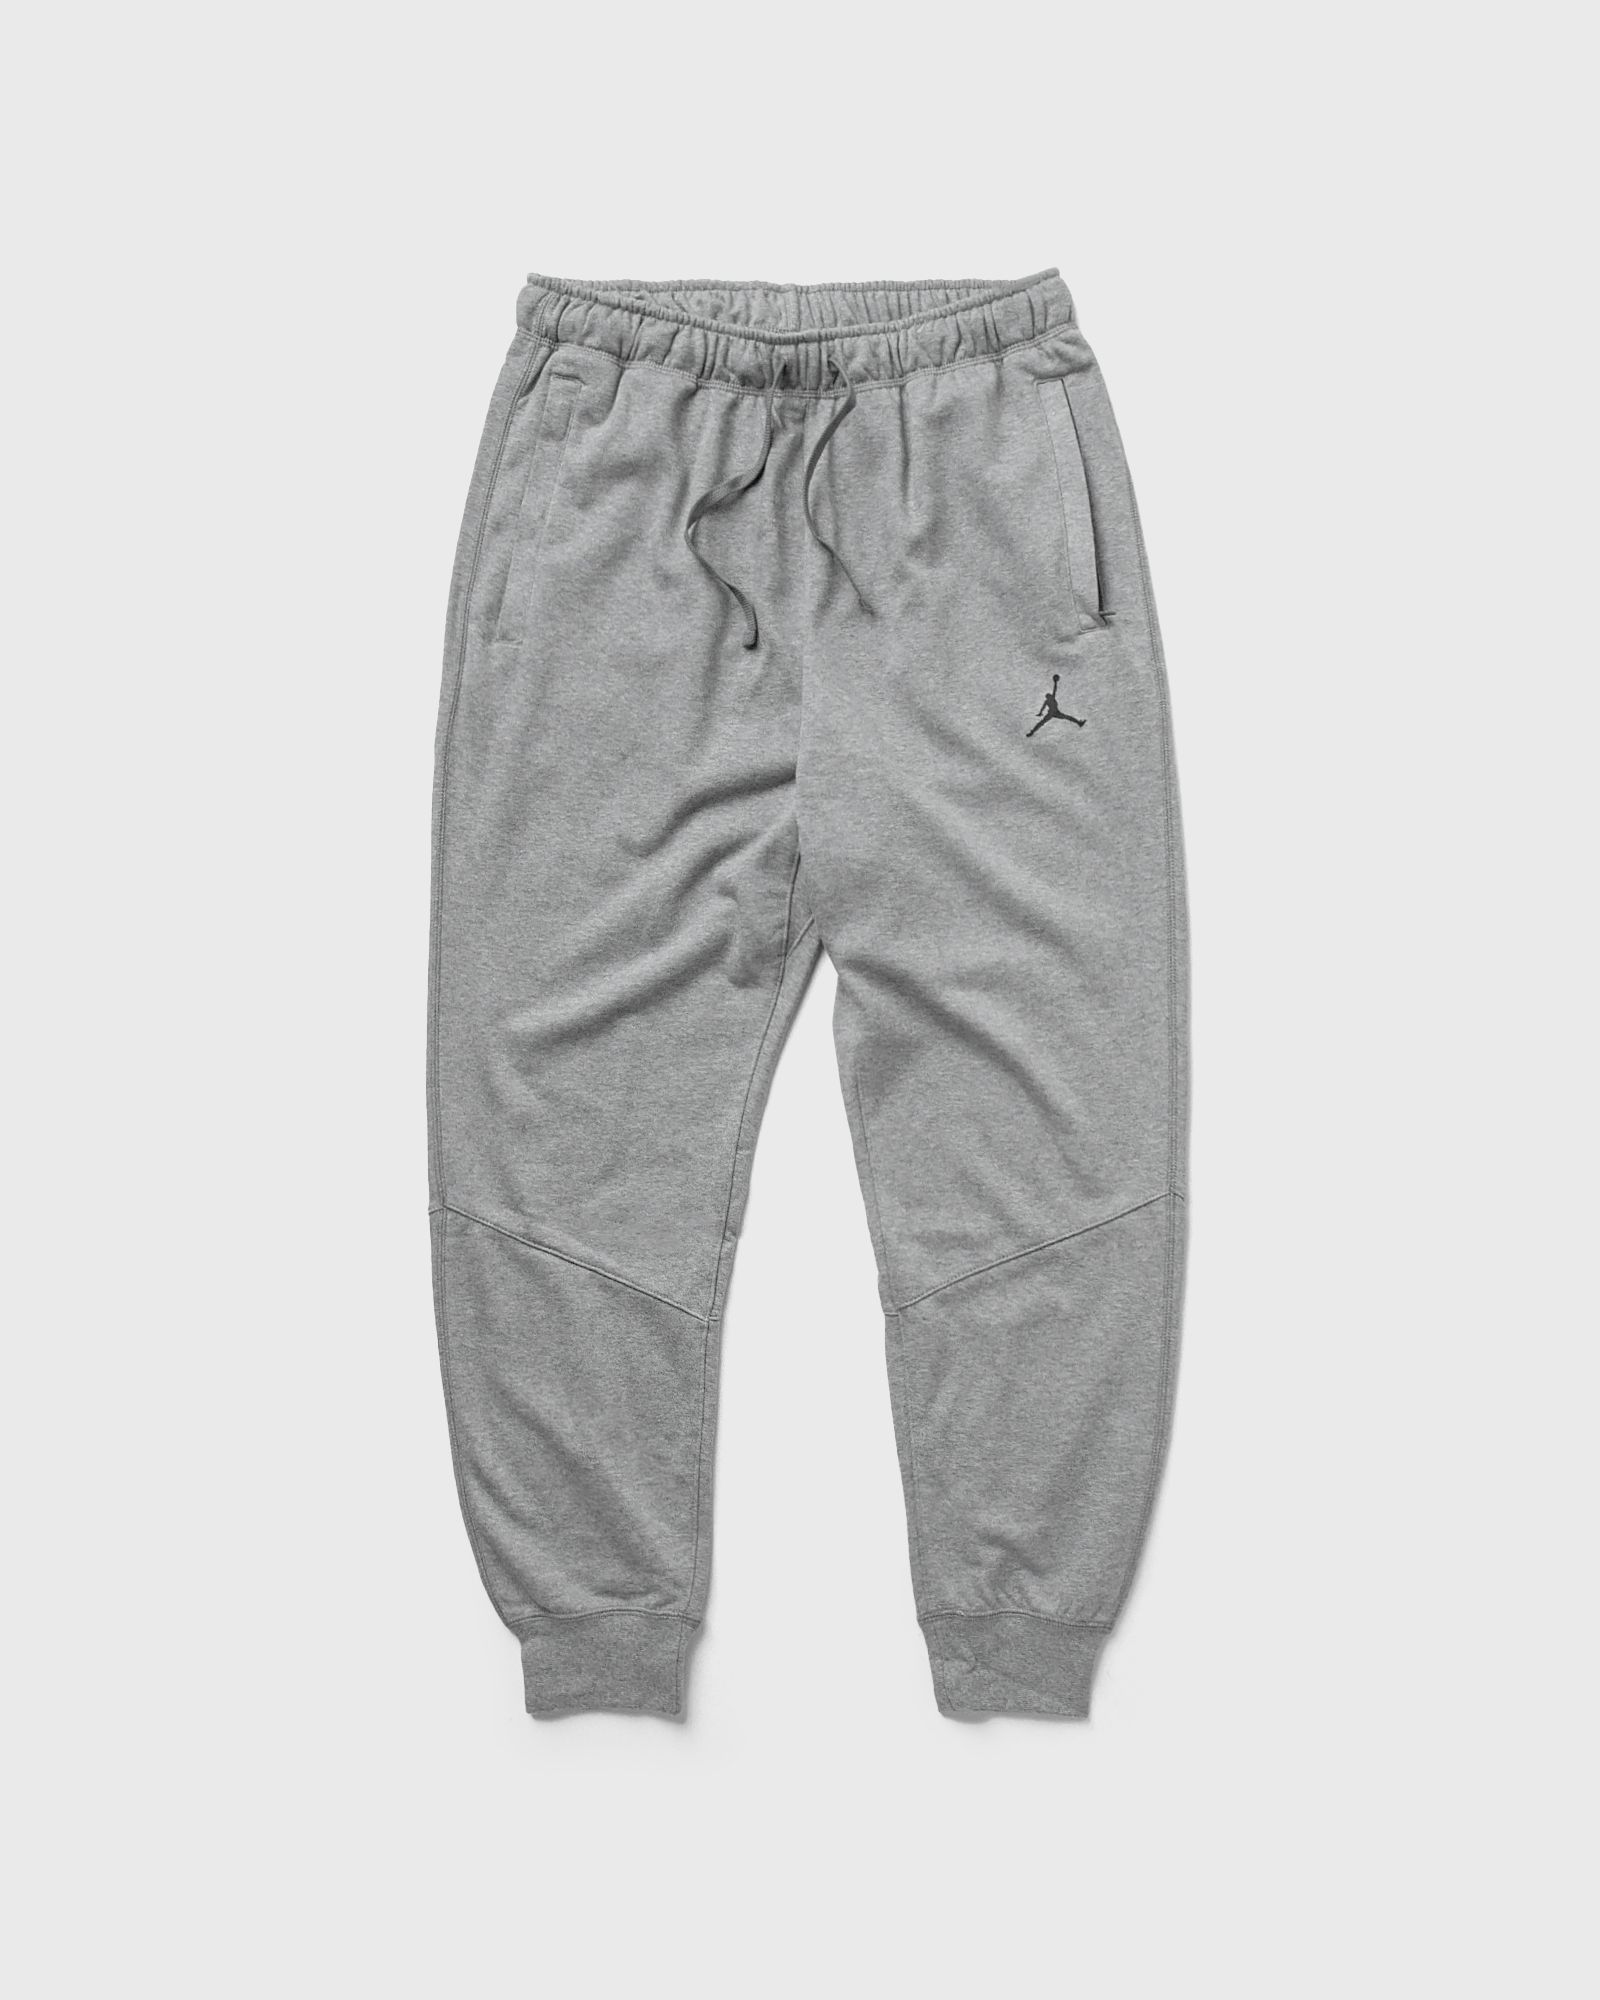 Jordan - sport dri-fit crossover fleece pants men sweatpants grey in größe:xl